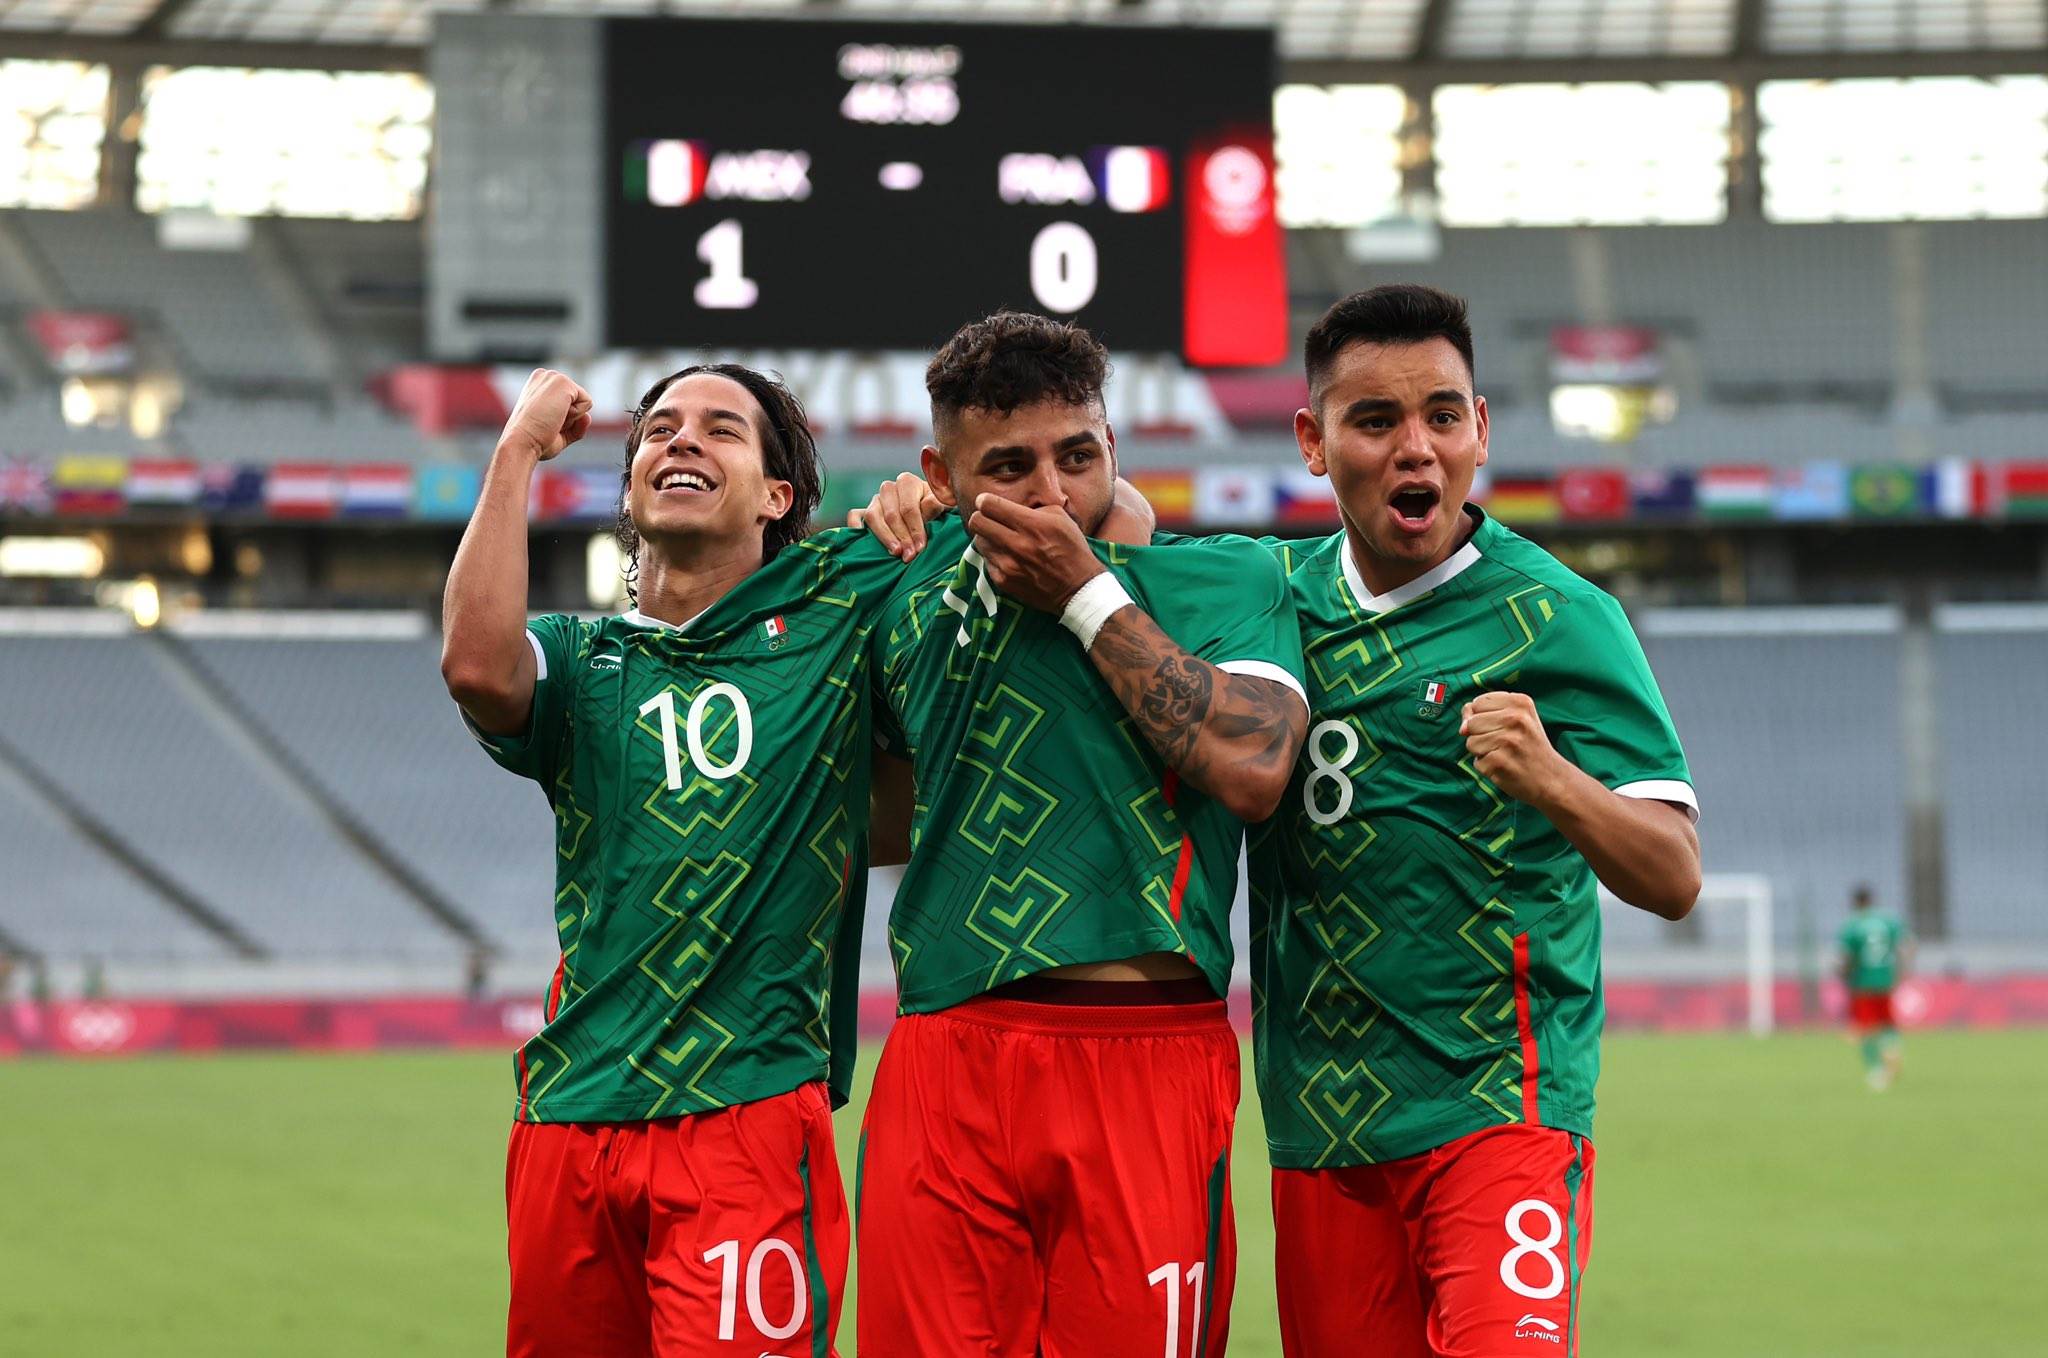 En su primer partido, México aplastó con marcador de 4-1 a la selección de Francia. Así inició el camino de la Selección Mexicana para conseguir su segunda medalla en los Juegos Olímpicos.